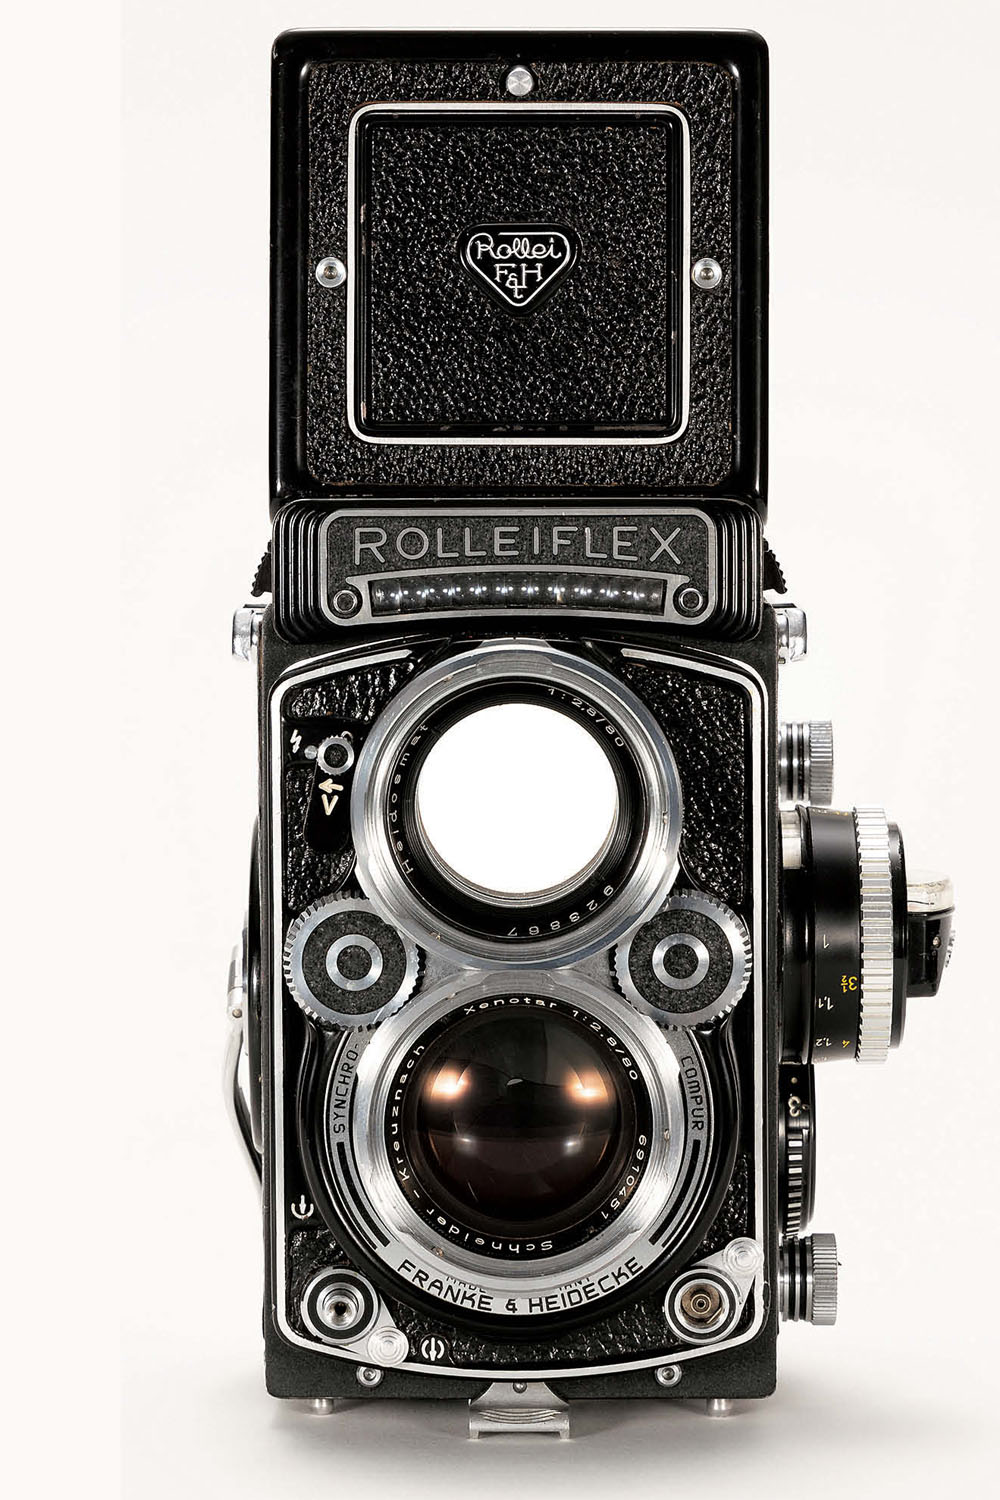 ましかくフォーマットが楽しい本格中判カメラ「ROLLEIFLEX 2.8F」 | フィルムカメラ・スタートブック 第7回 – PICTURES